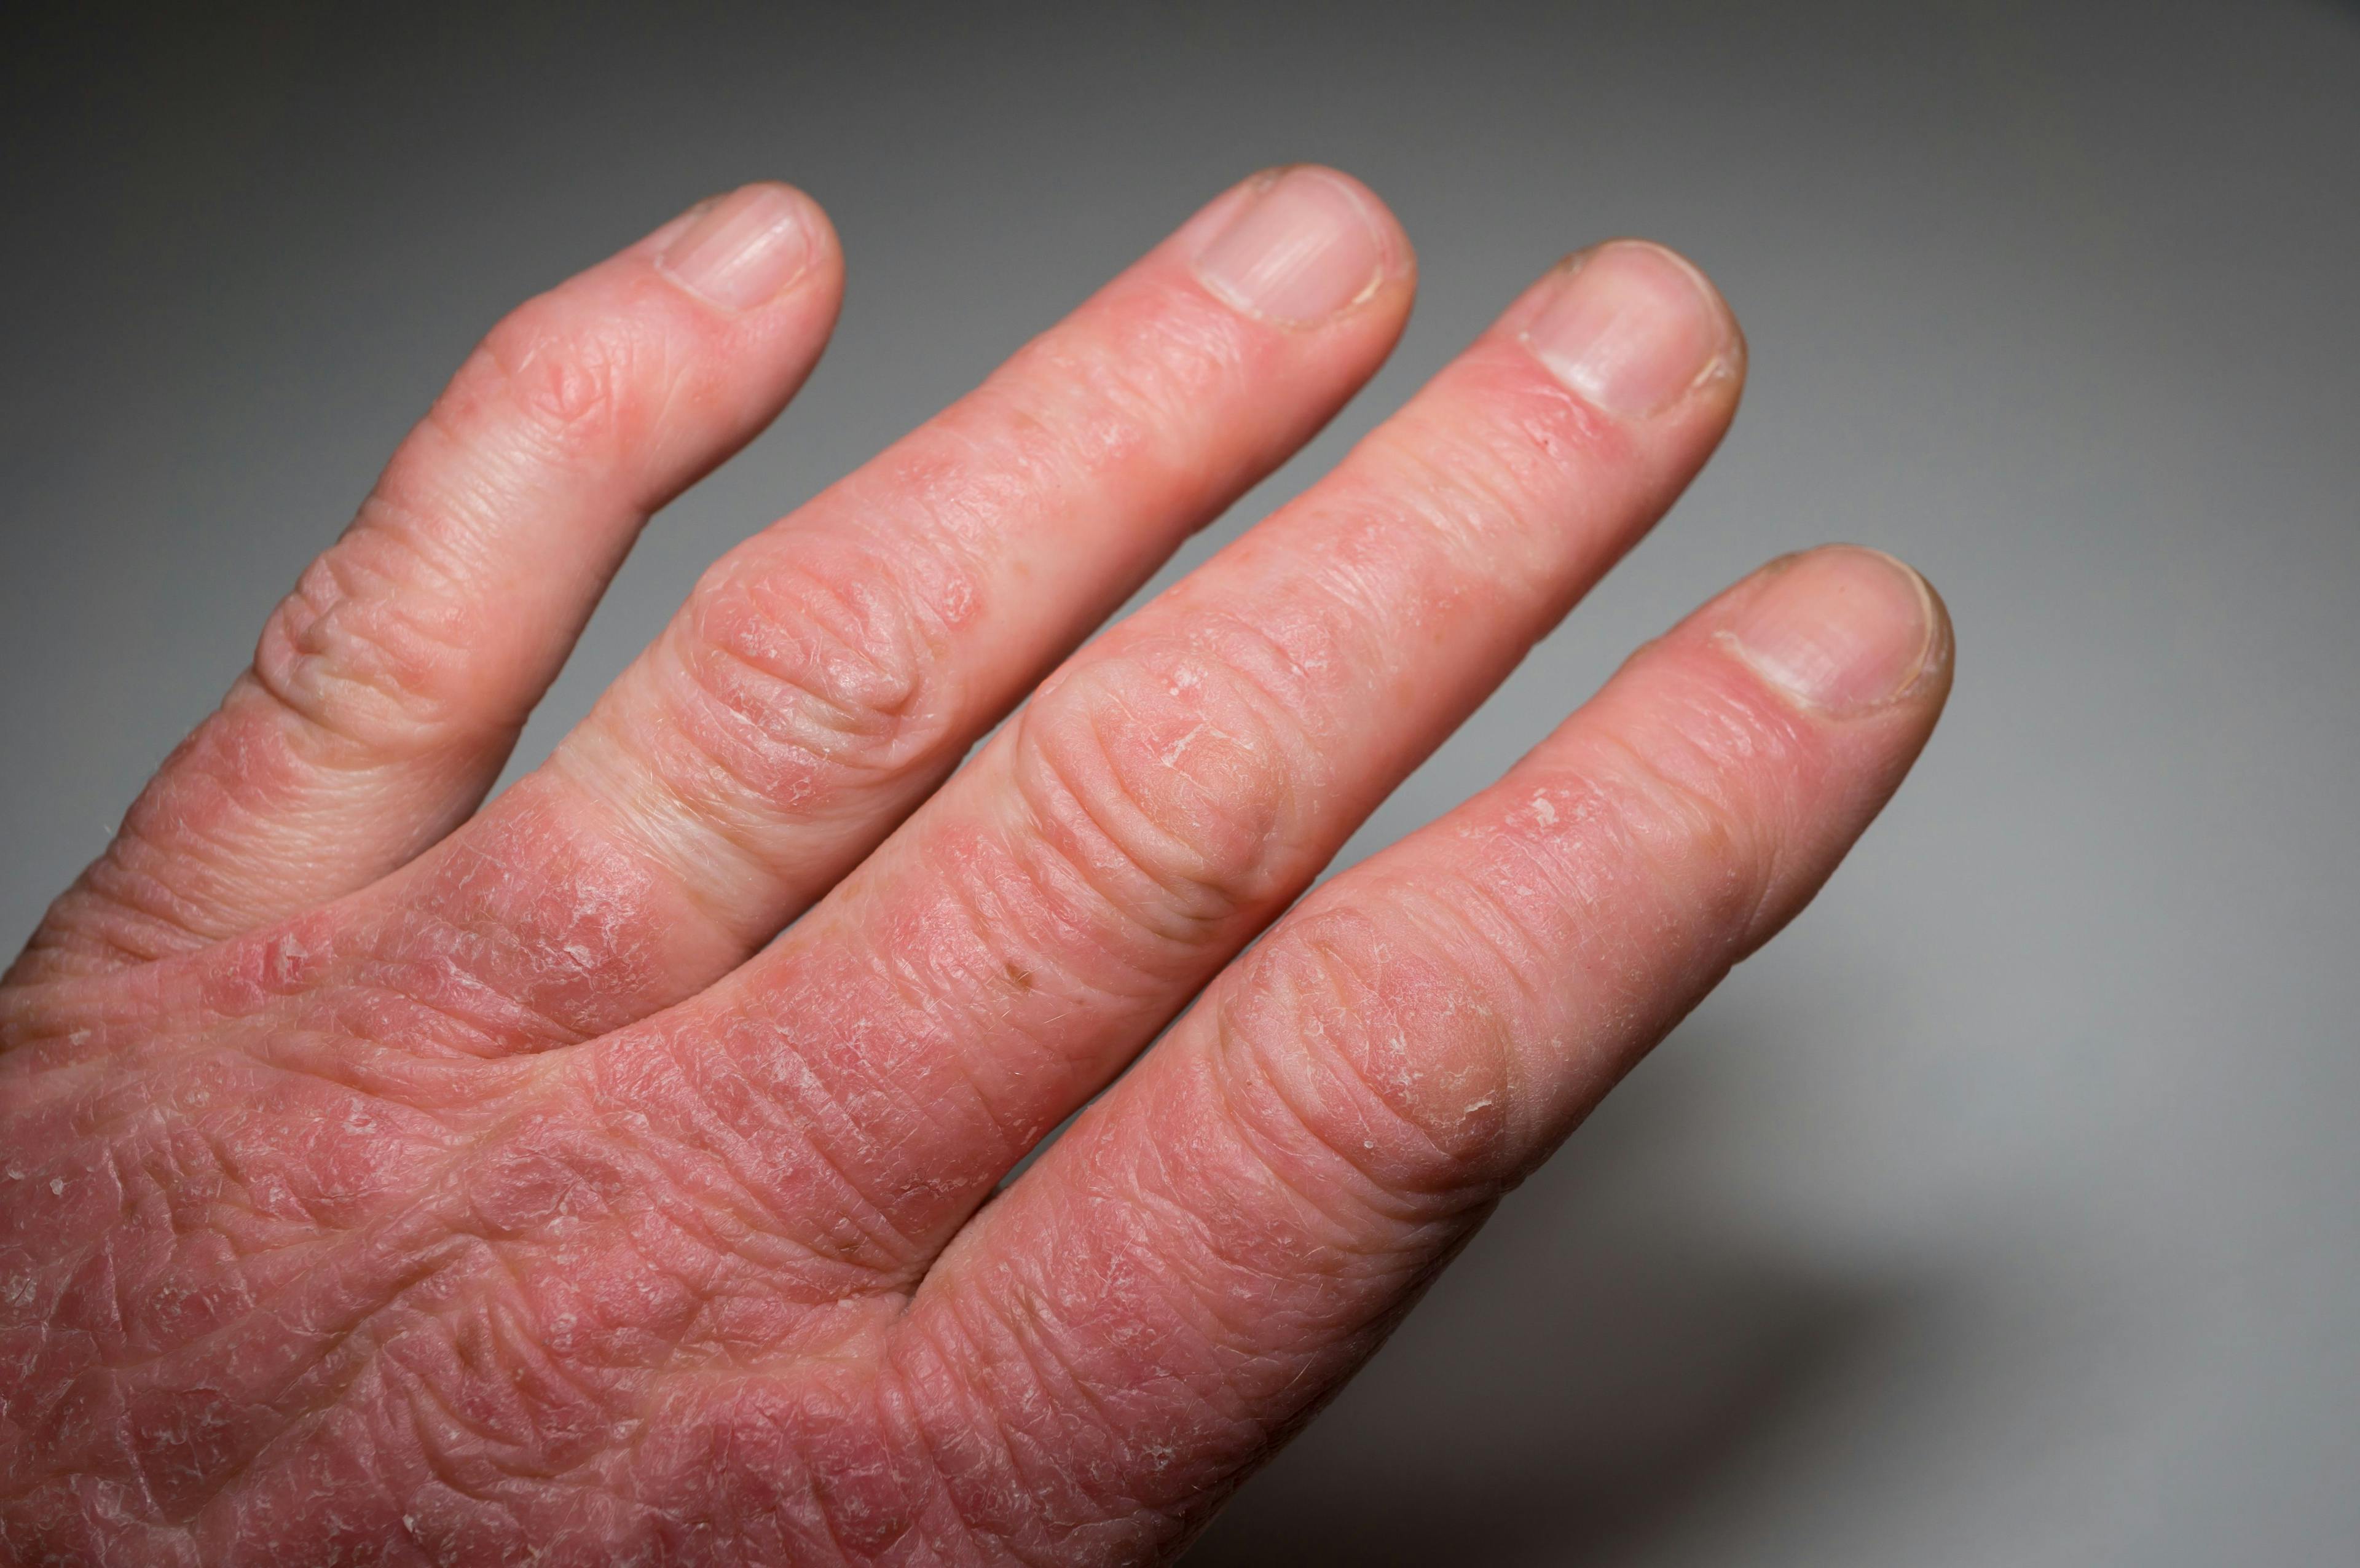 Hand with psoriasis rash